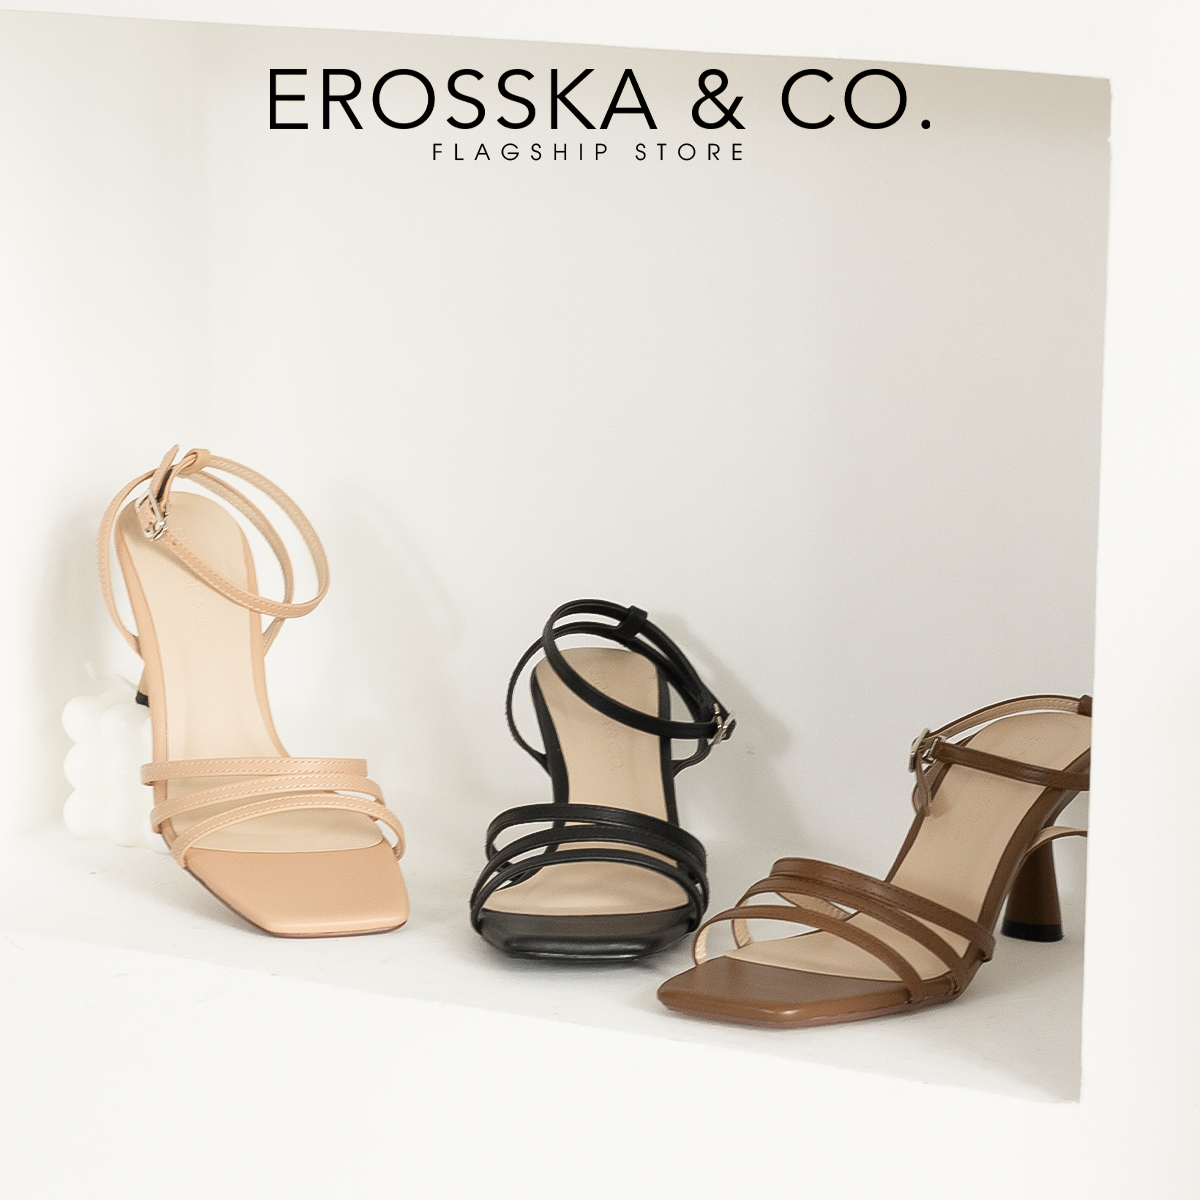 Erosska - Giày cao gót nhọn mũi hở phối dây quai mảnh cao 7cm - EB052